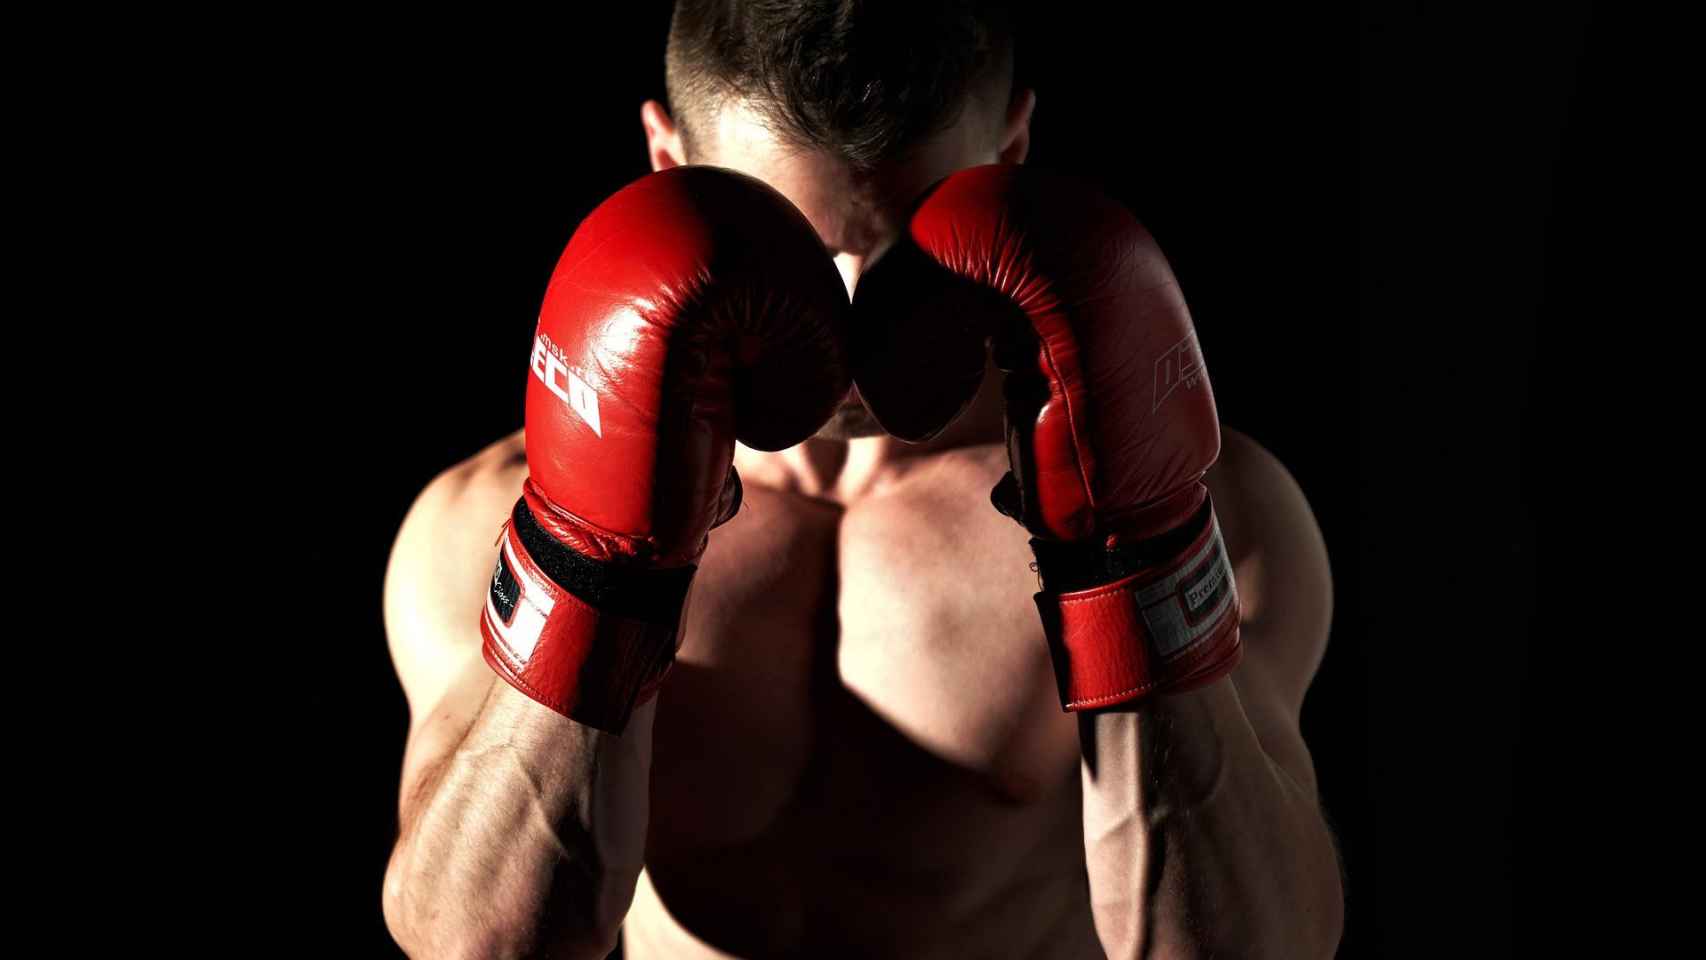 Un boxeador posa con una posición defensiva / CG